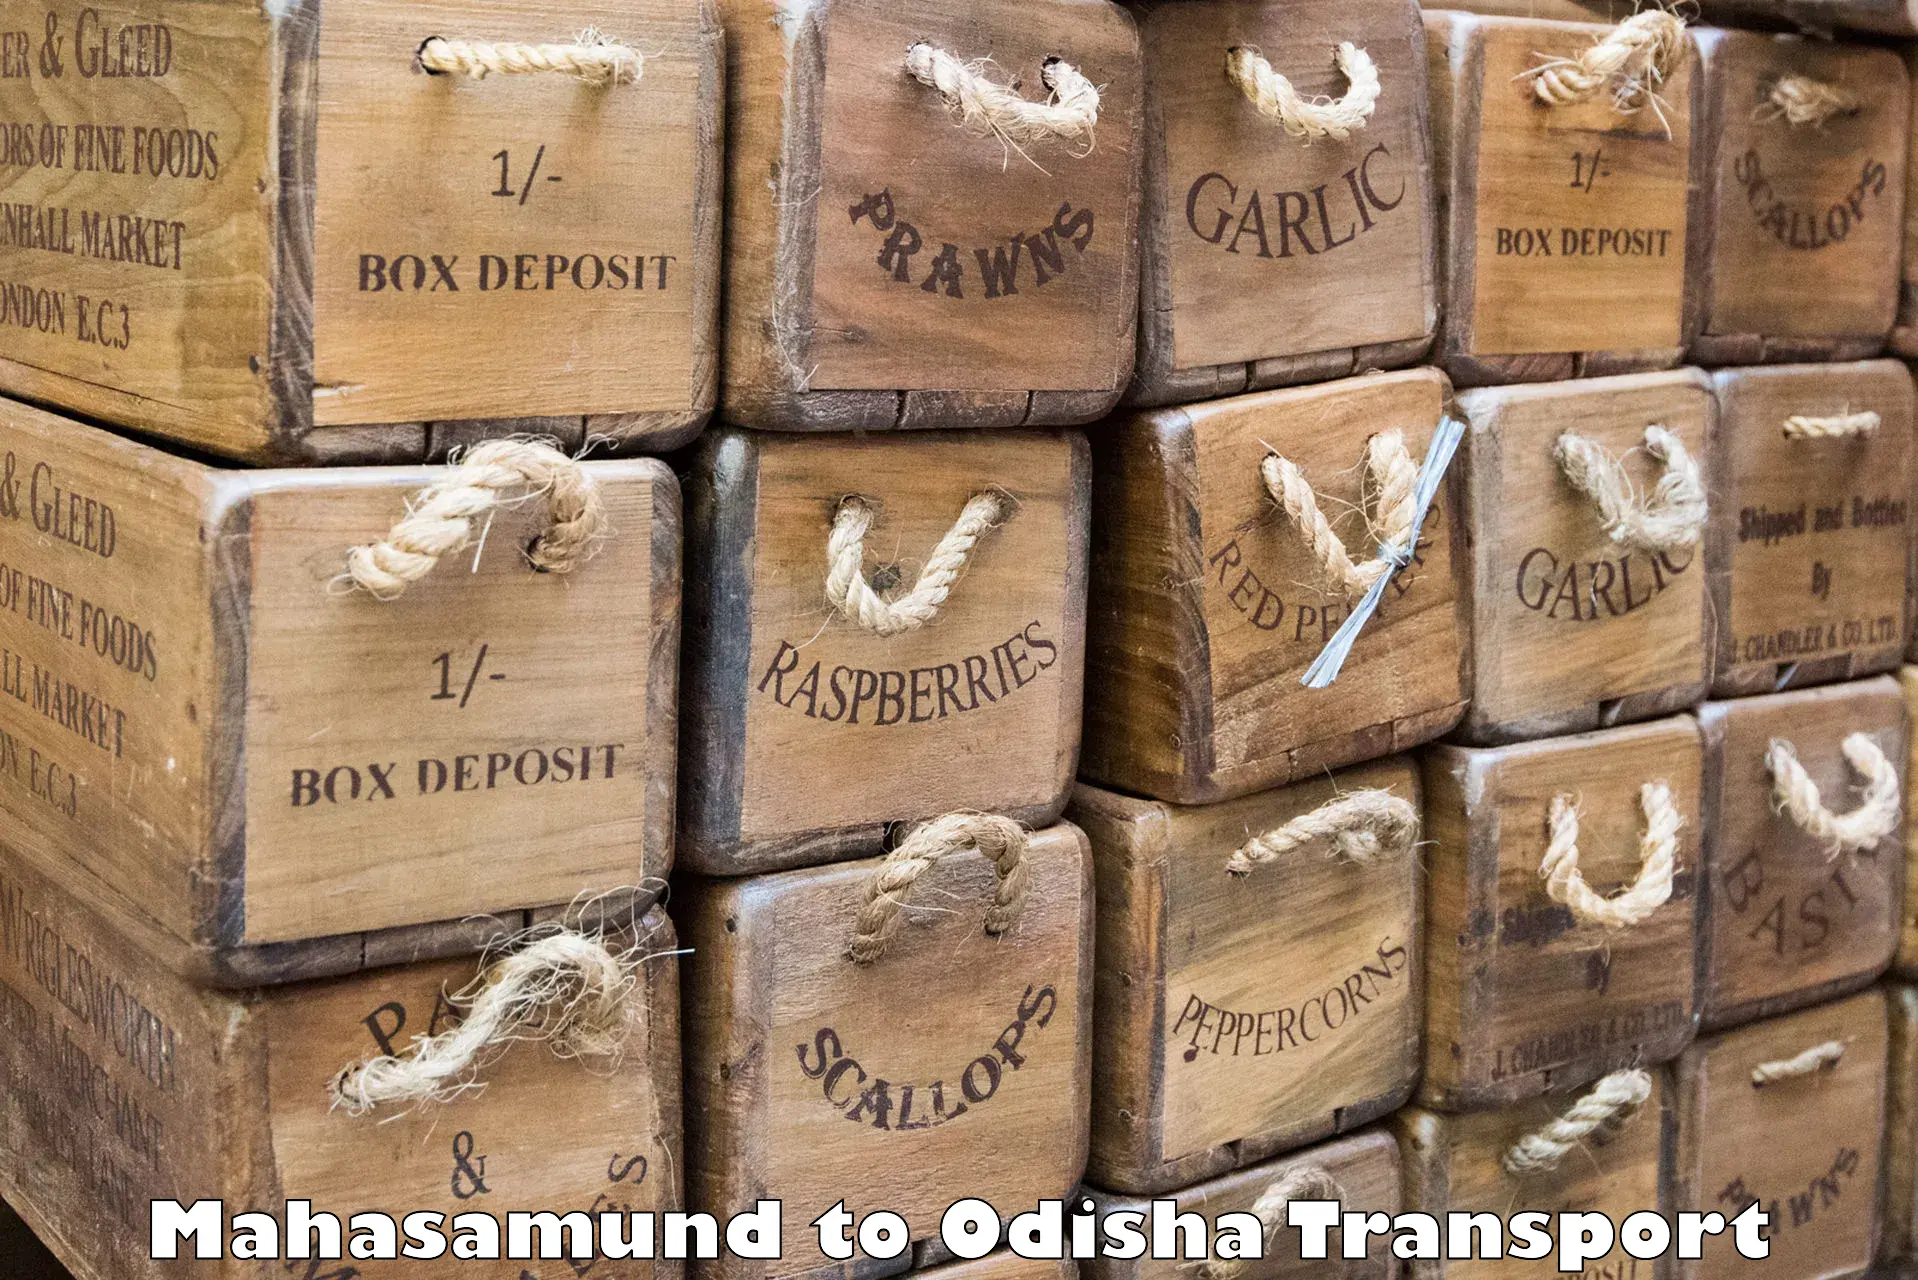 Furniture transport service Mahasamund to Bonth